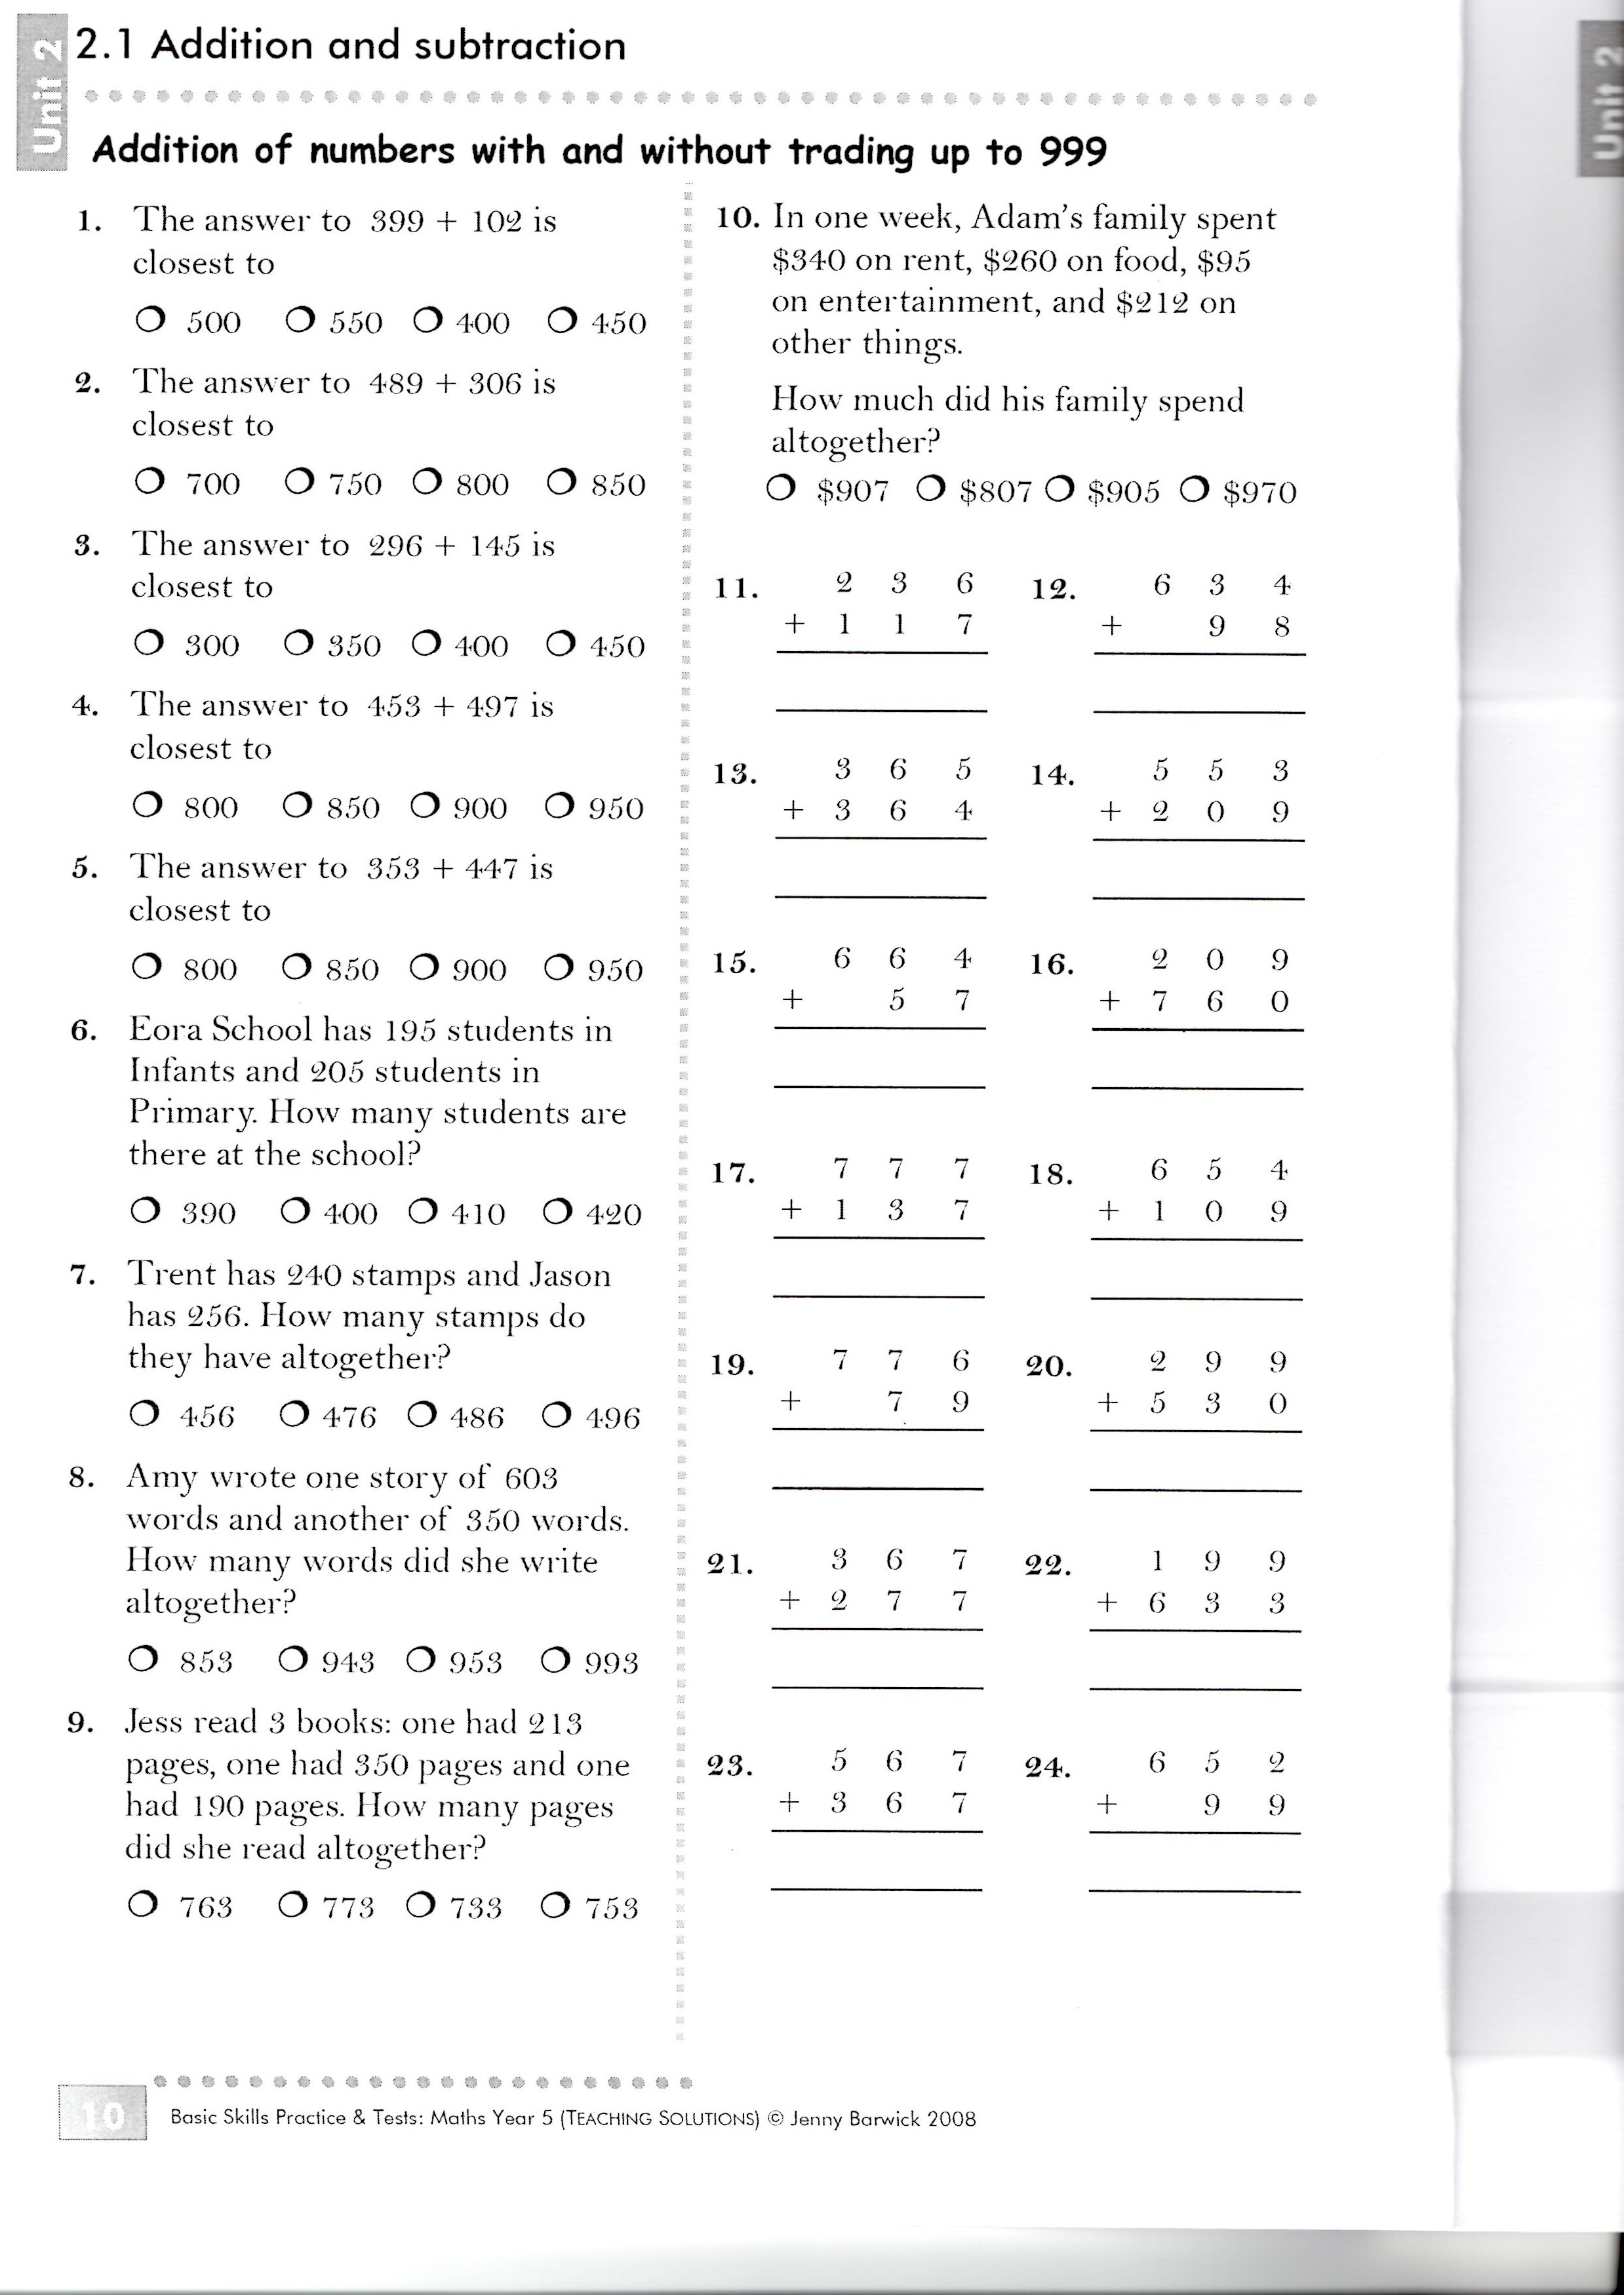 Best Basic Math Skills Assessment Printable Harper Blog 28820 Hot Sex 